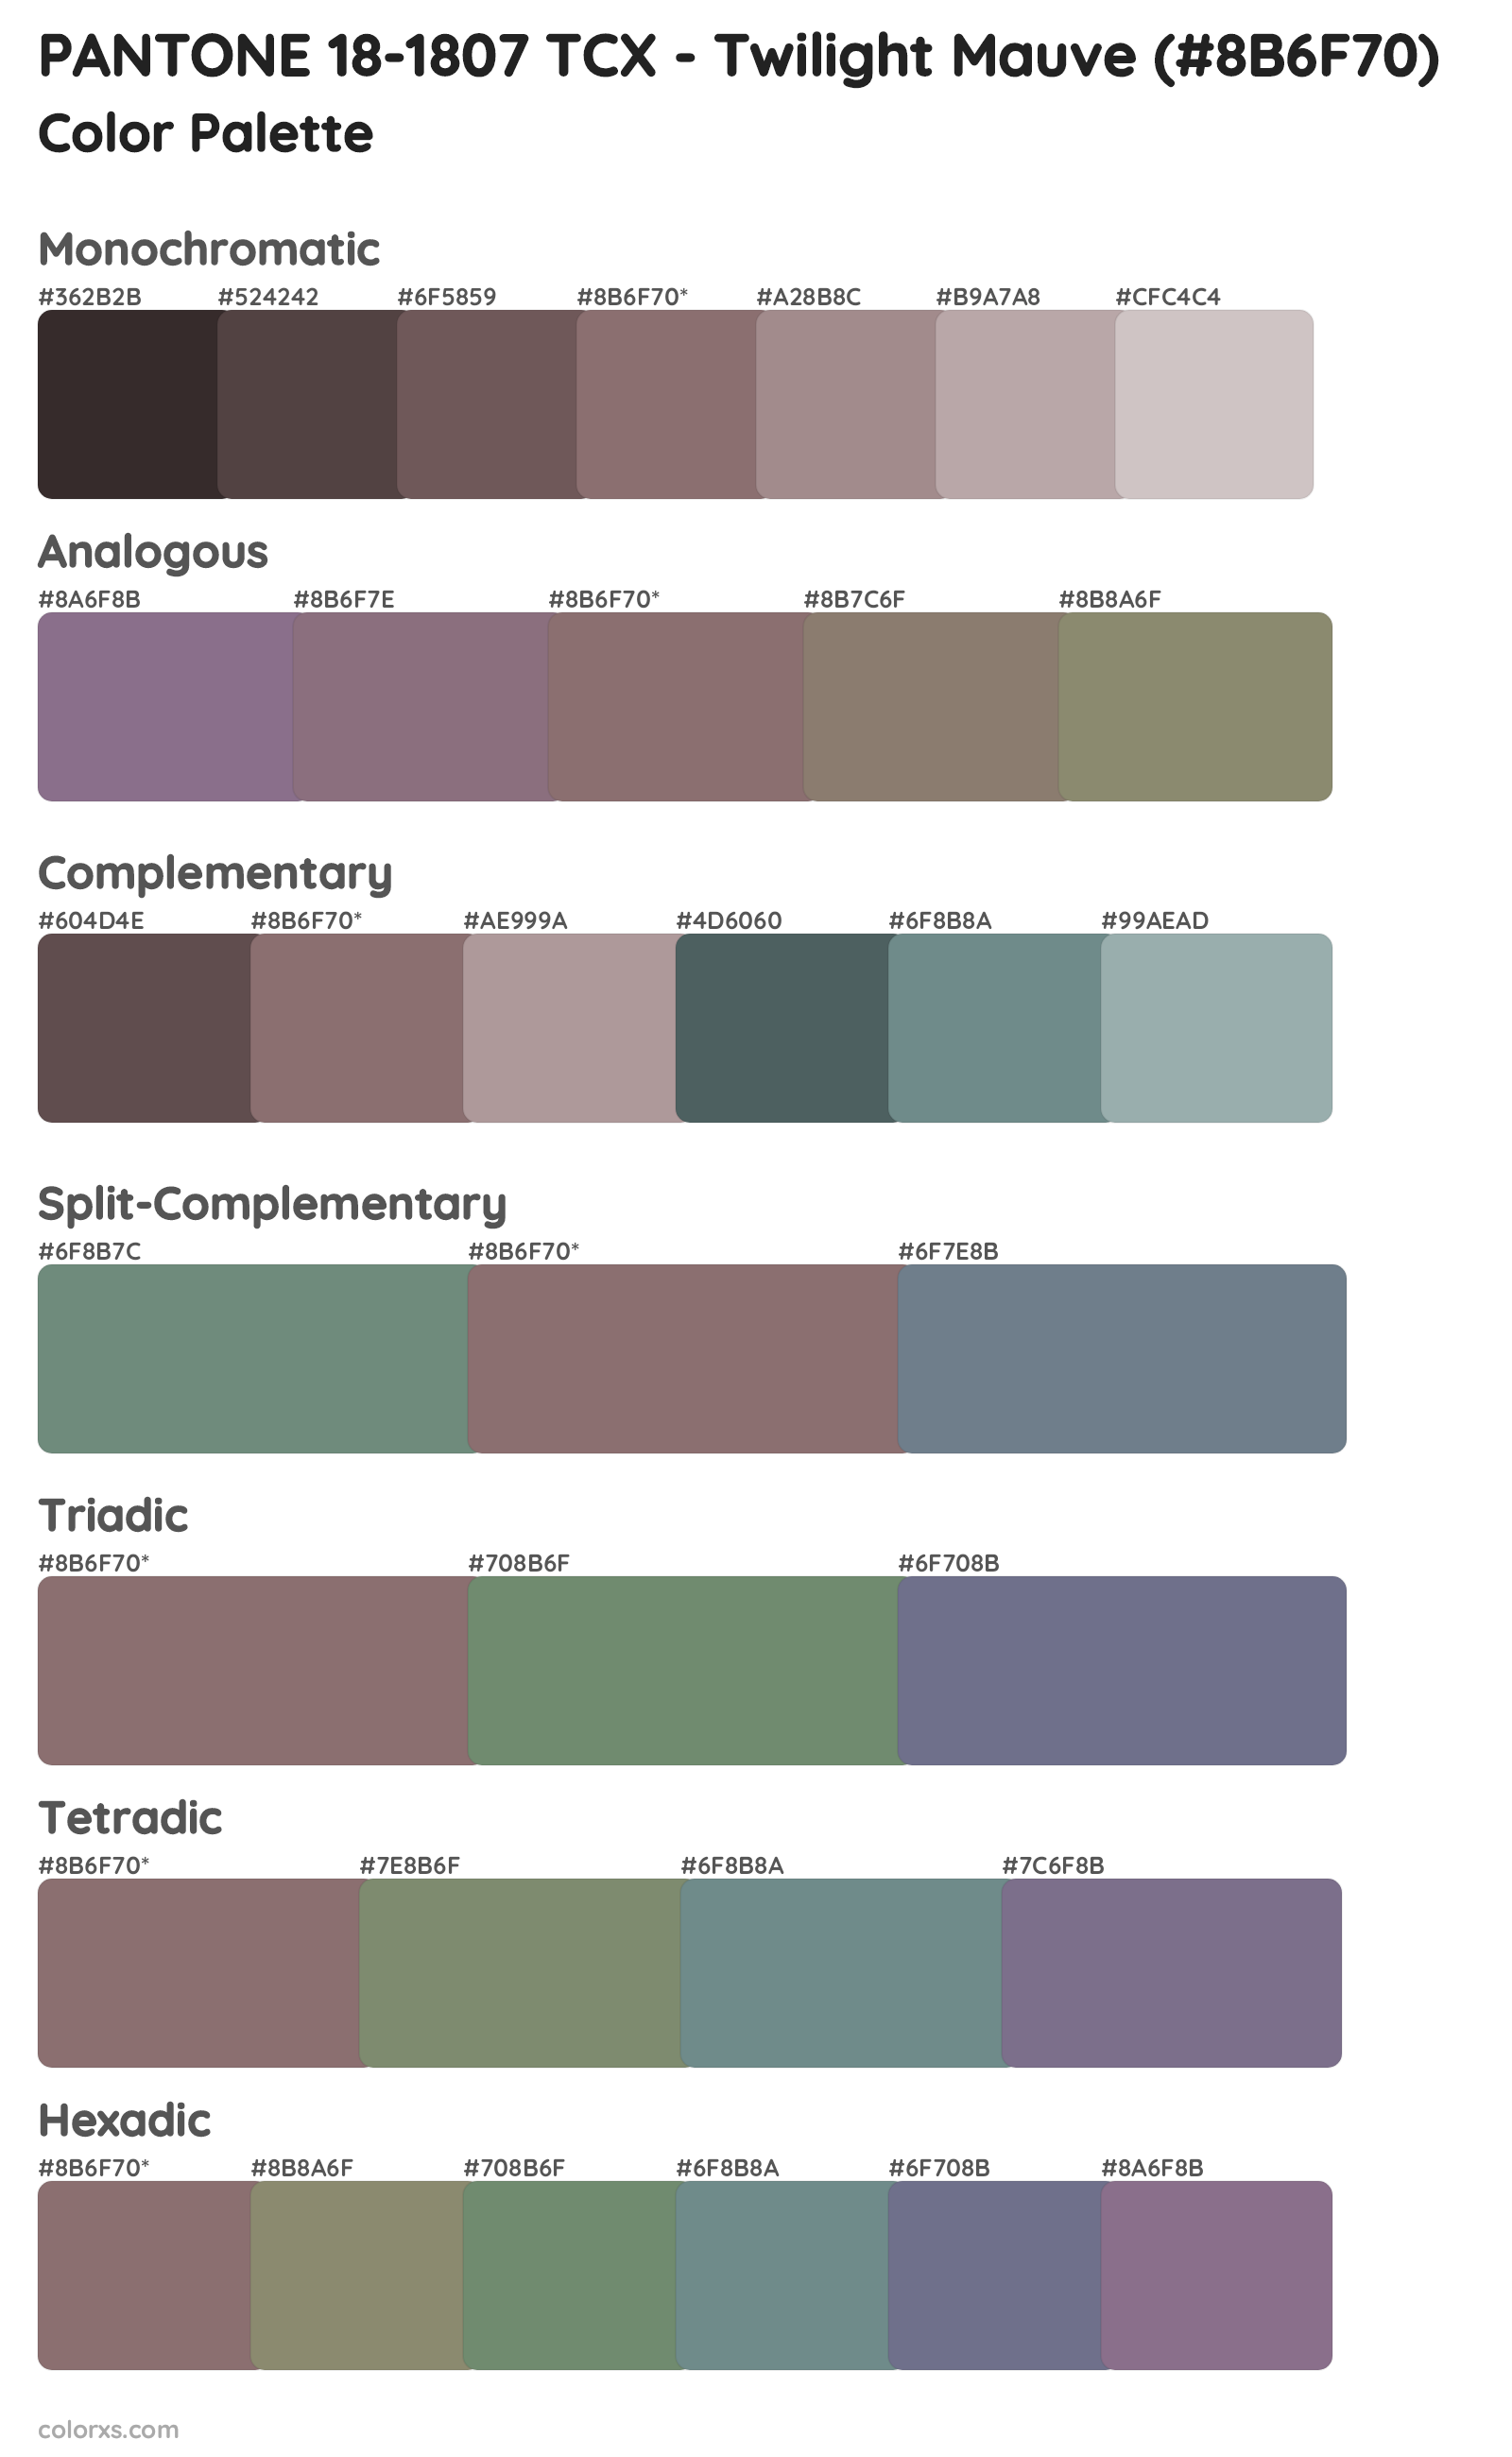 PANTONE 18-1807 TCX - Twilight Mauve Color Scheme Palettes